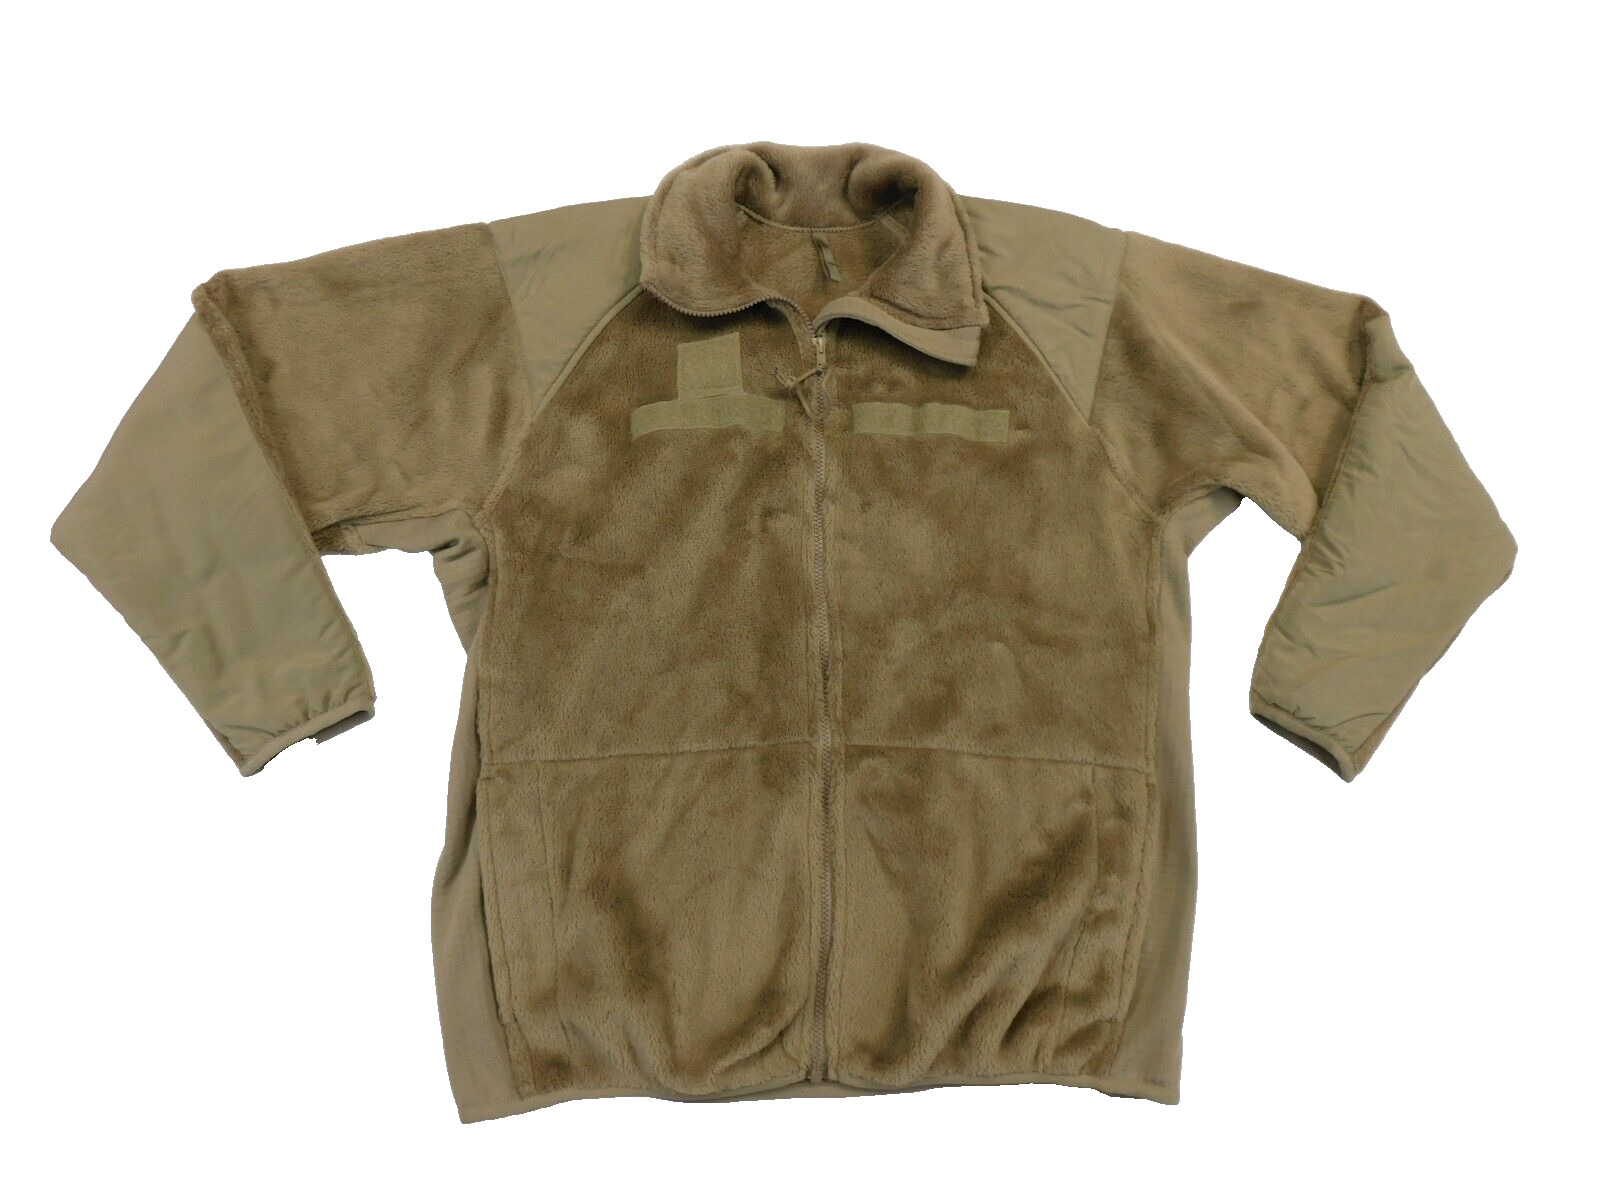 Coyote Tan Fleece Jacket Medium Regular US Cold Weather Gen III ECWCS L3 Coat